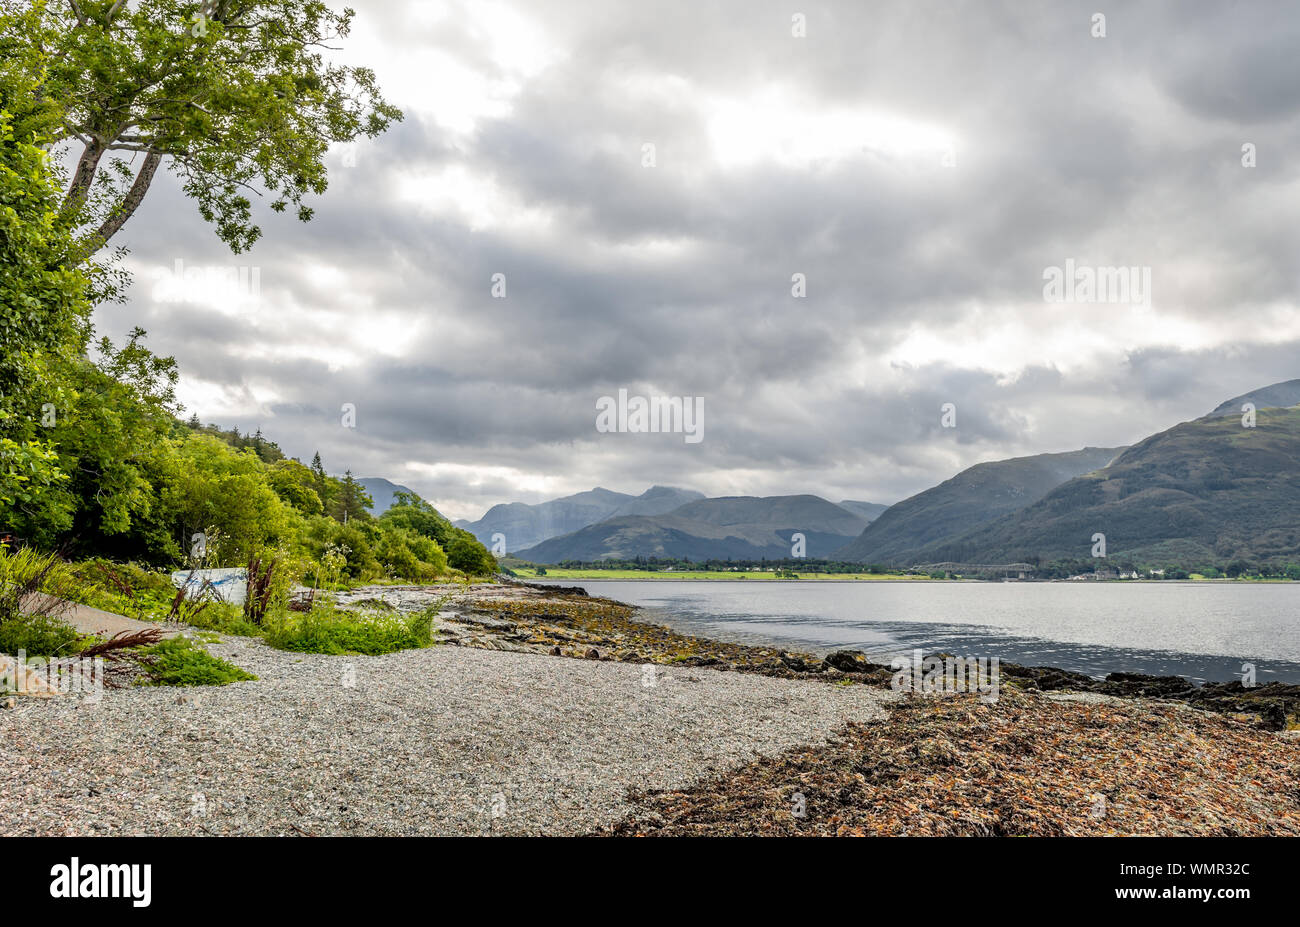 Loch Linnhe paesaggio, nelle highlands scozzesi. Loch Linnhe è un un mare loch sulla costa ovest della Scozia. Foto Stock